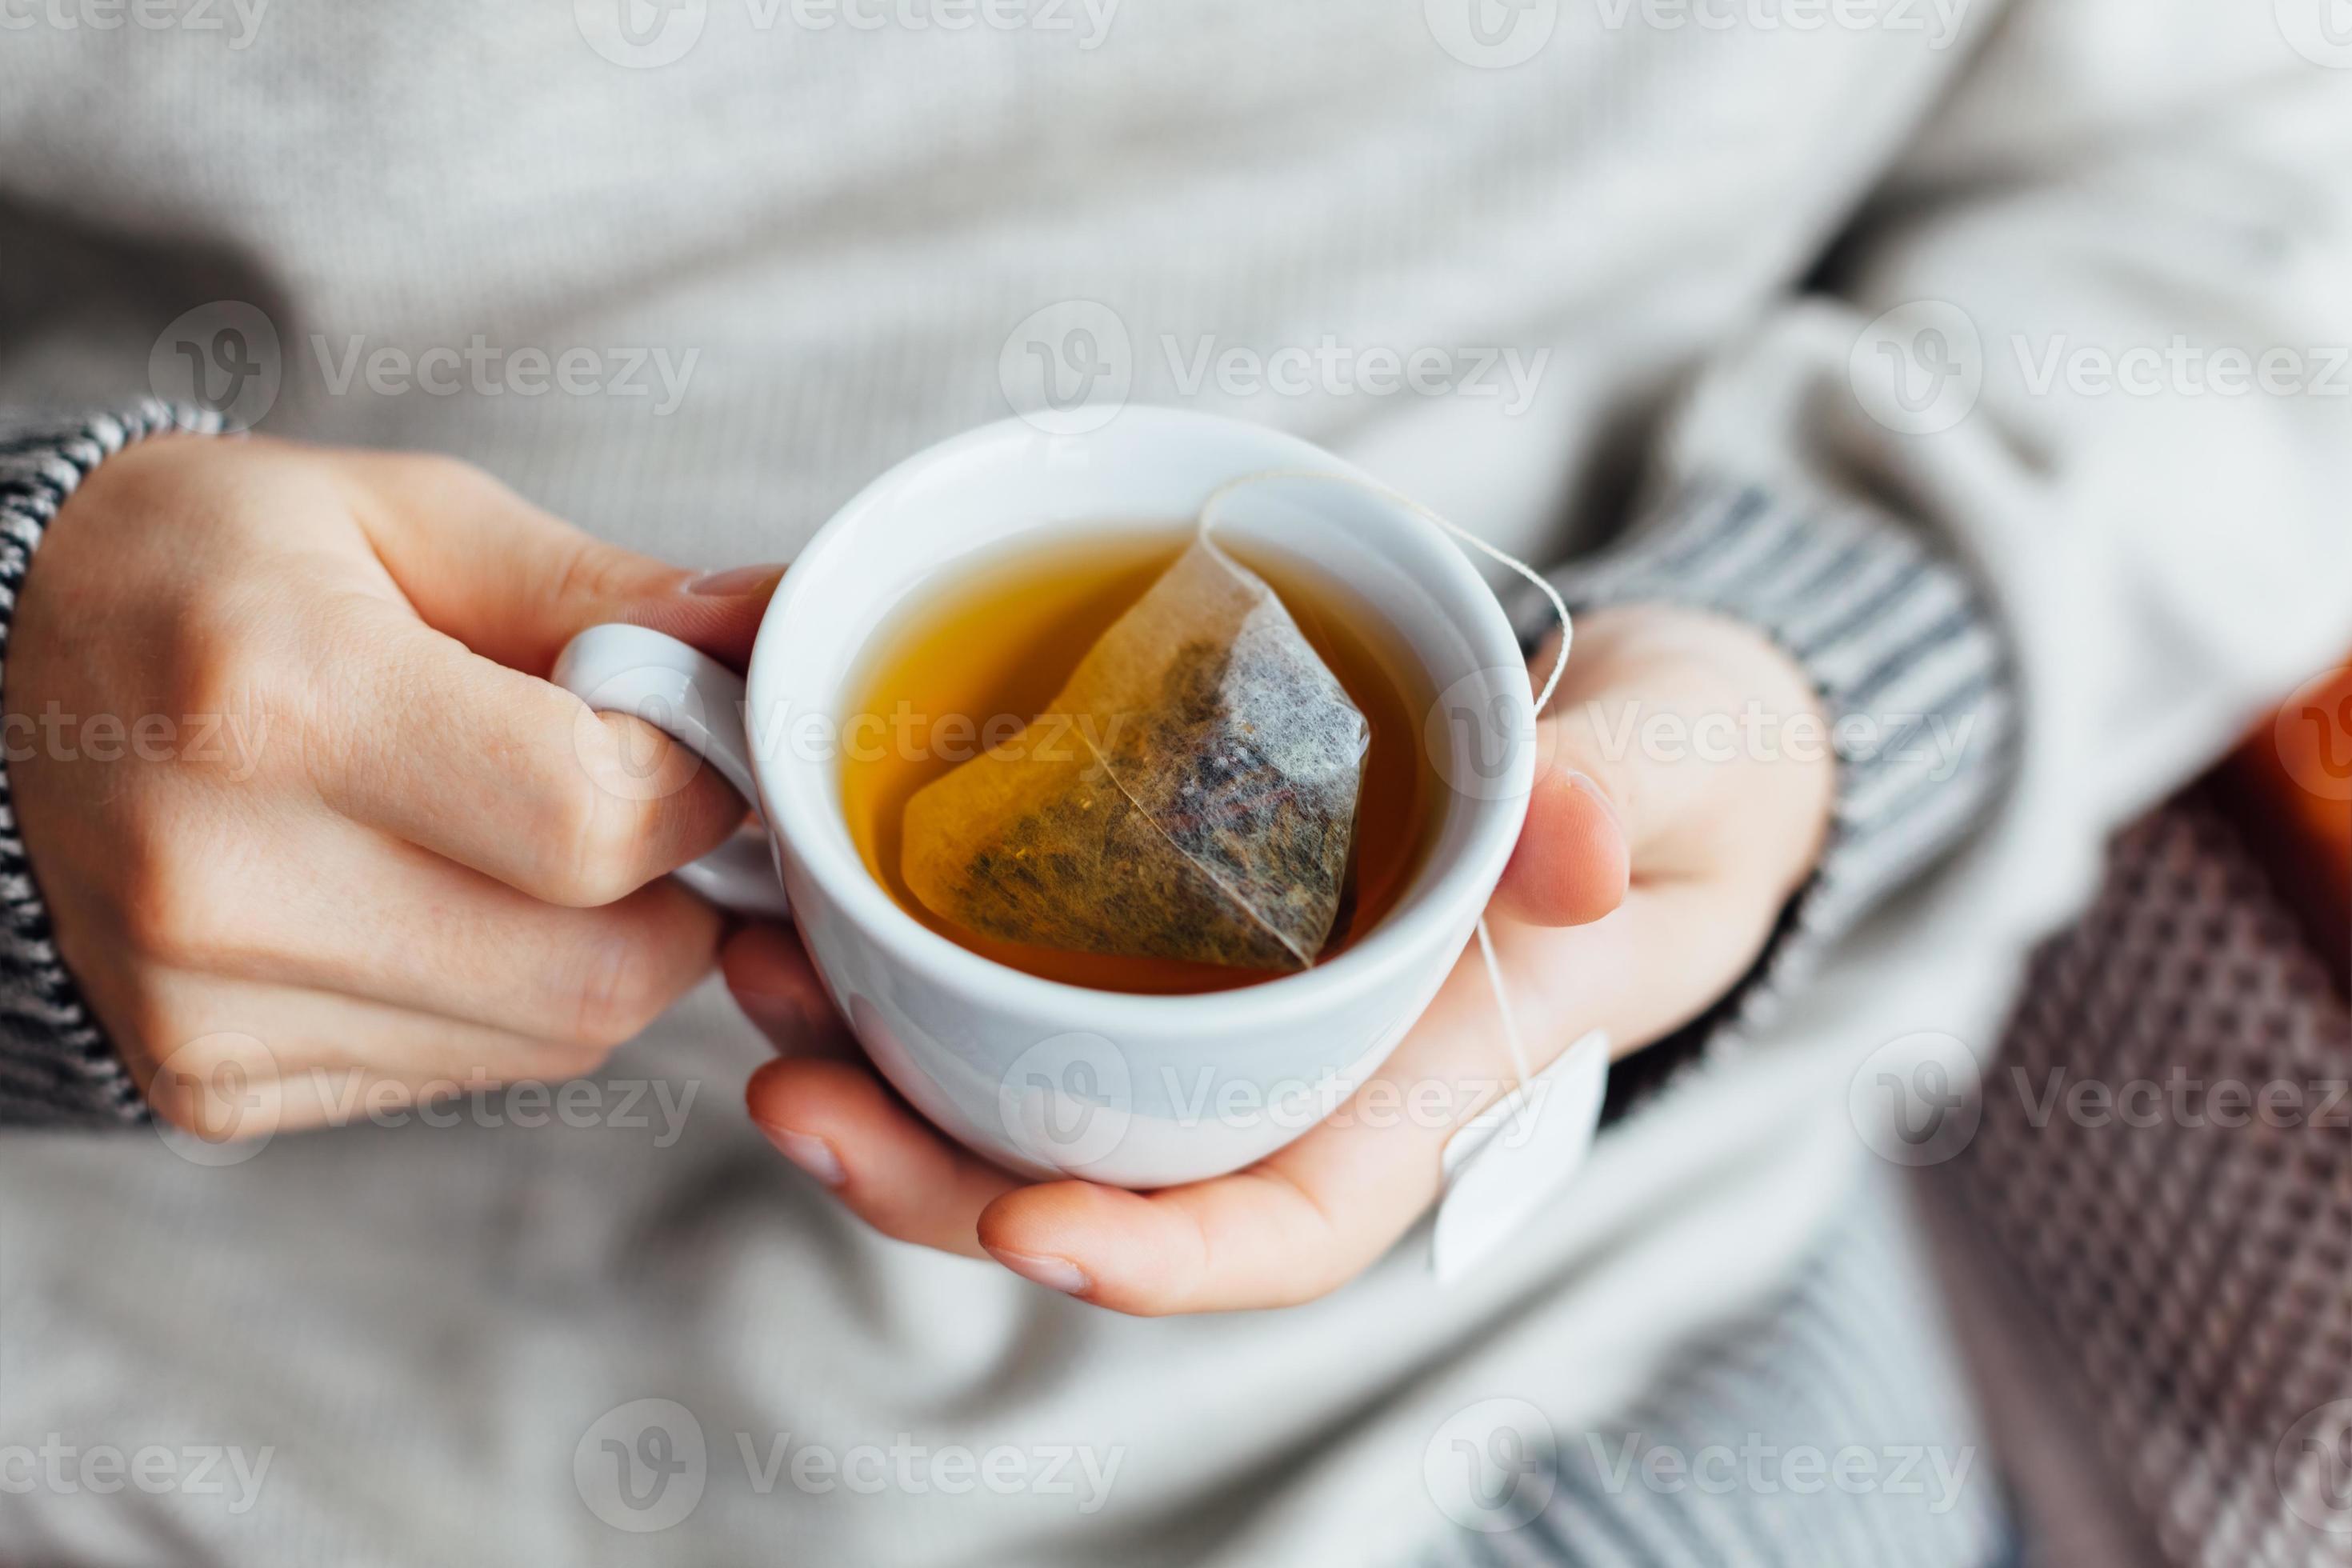 A cup of liber tea. Горячий чай. Кружка чай. Чайный пакетик в кружке. Теплый чай.